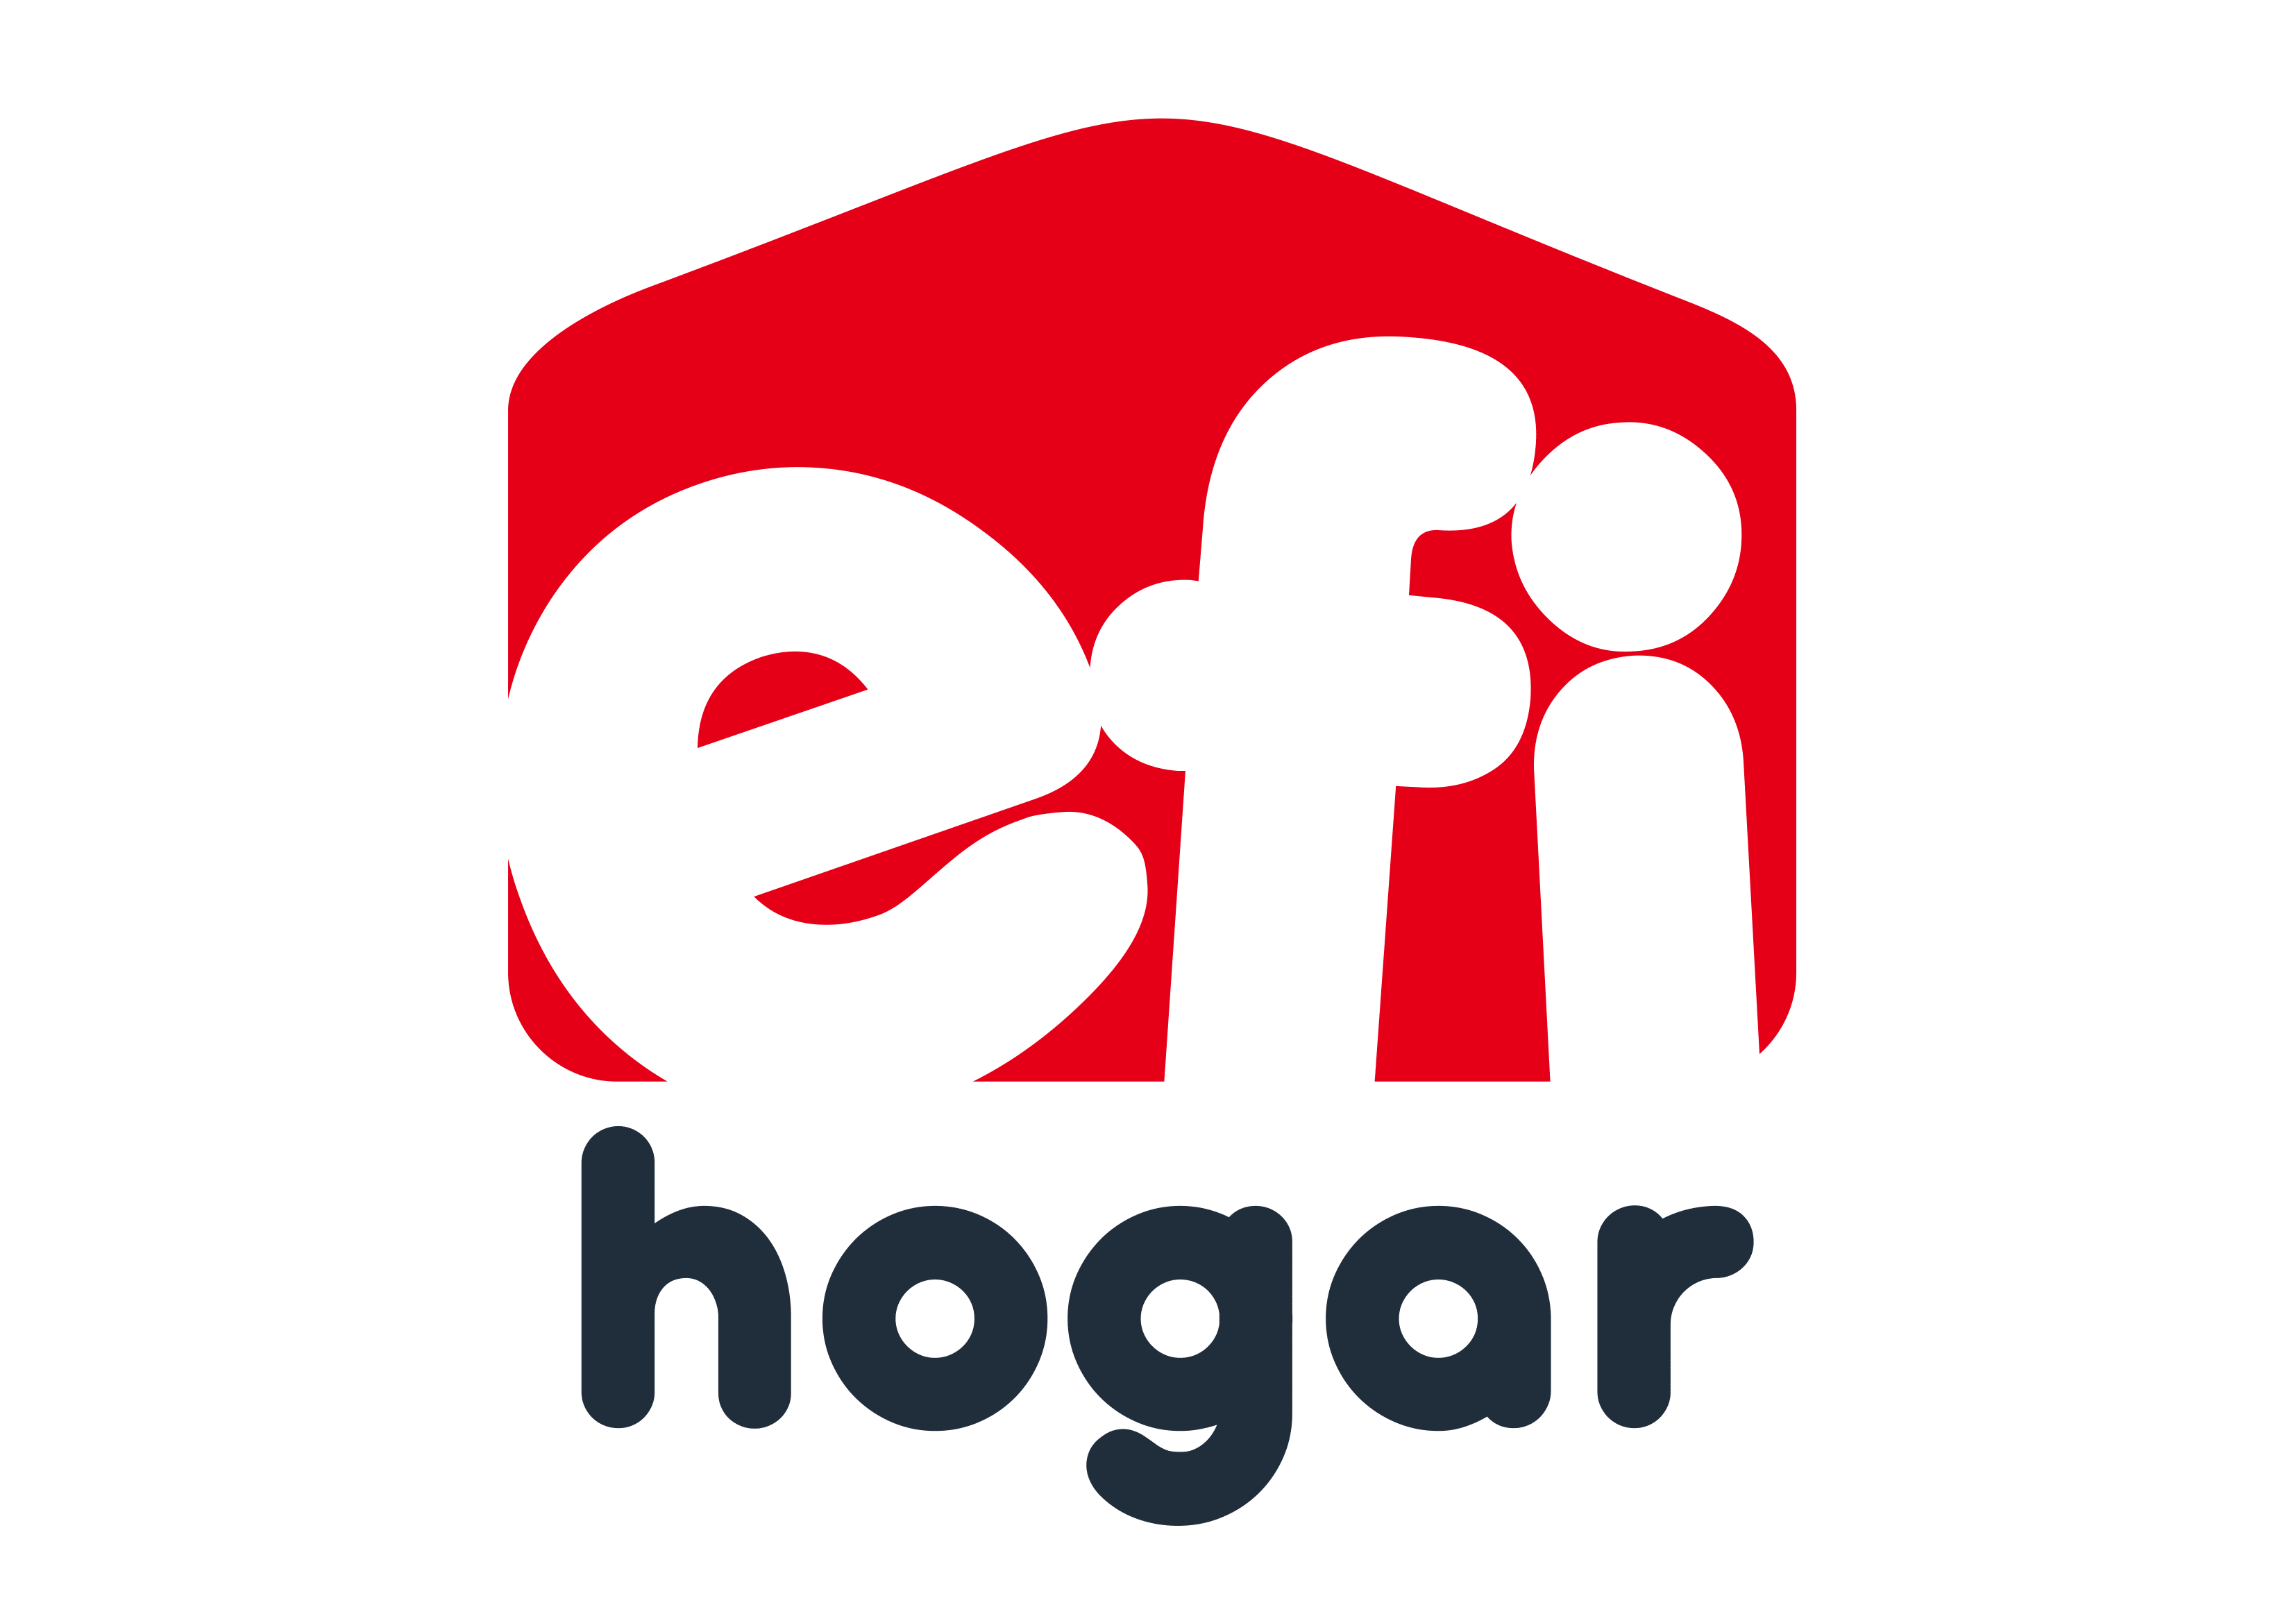 efihogar.com.py